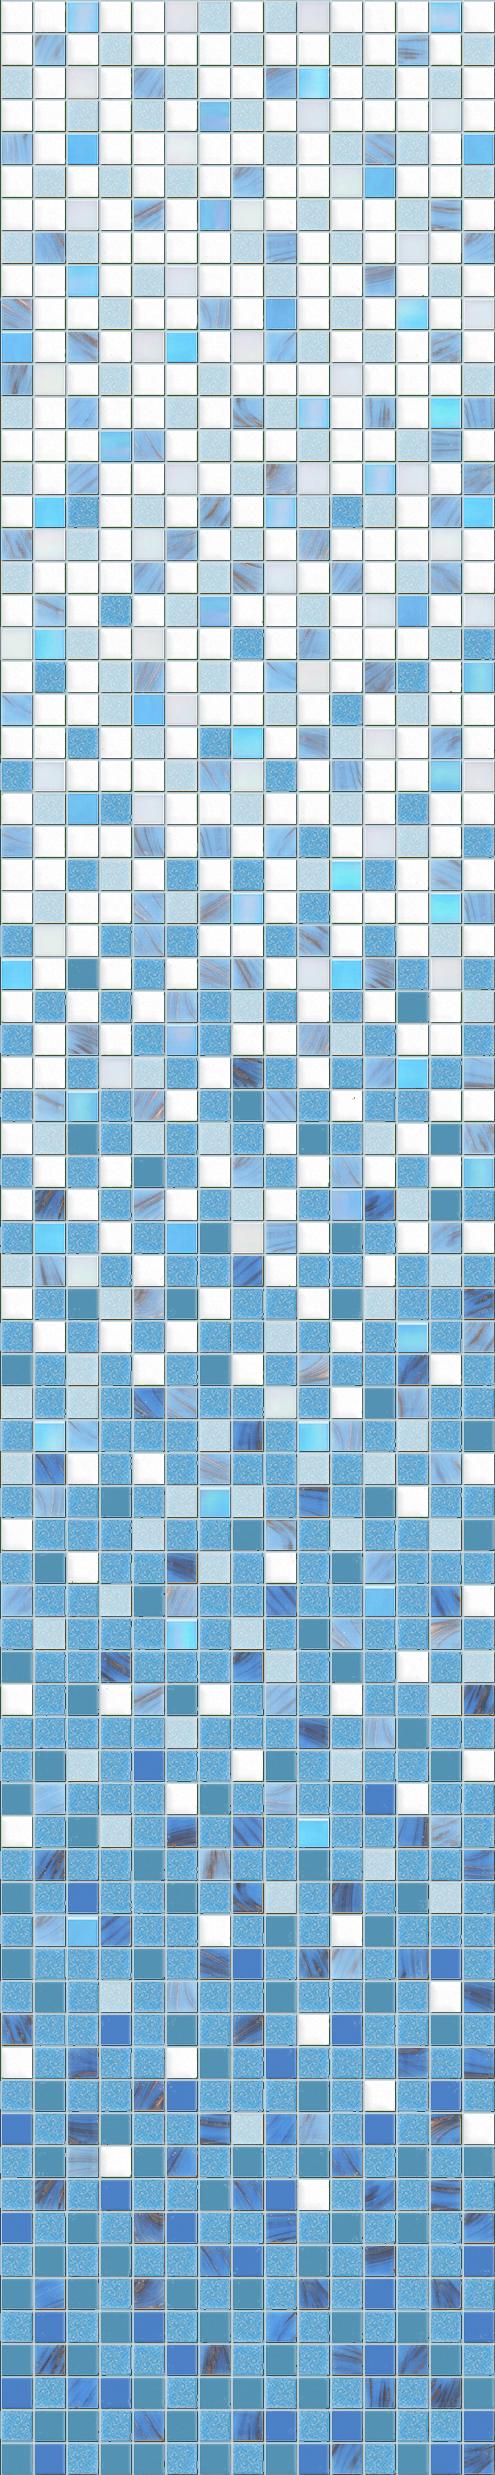 Скляна мозаїка плитка D-CORE розтяжка 1635х327 мм (RI-02)